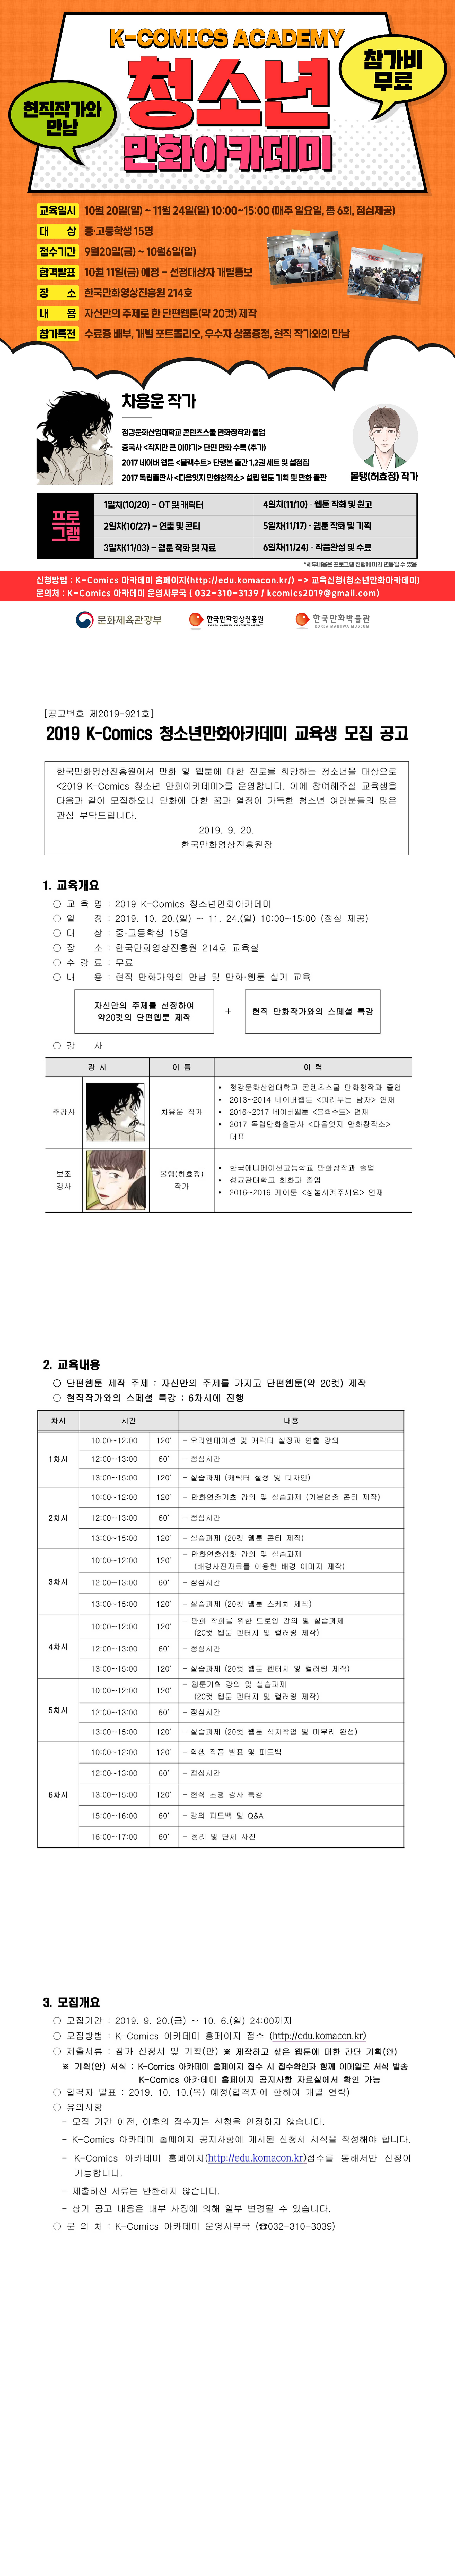 2019 K-Comics 청소년만화아카데미 교육생 모집 공고